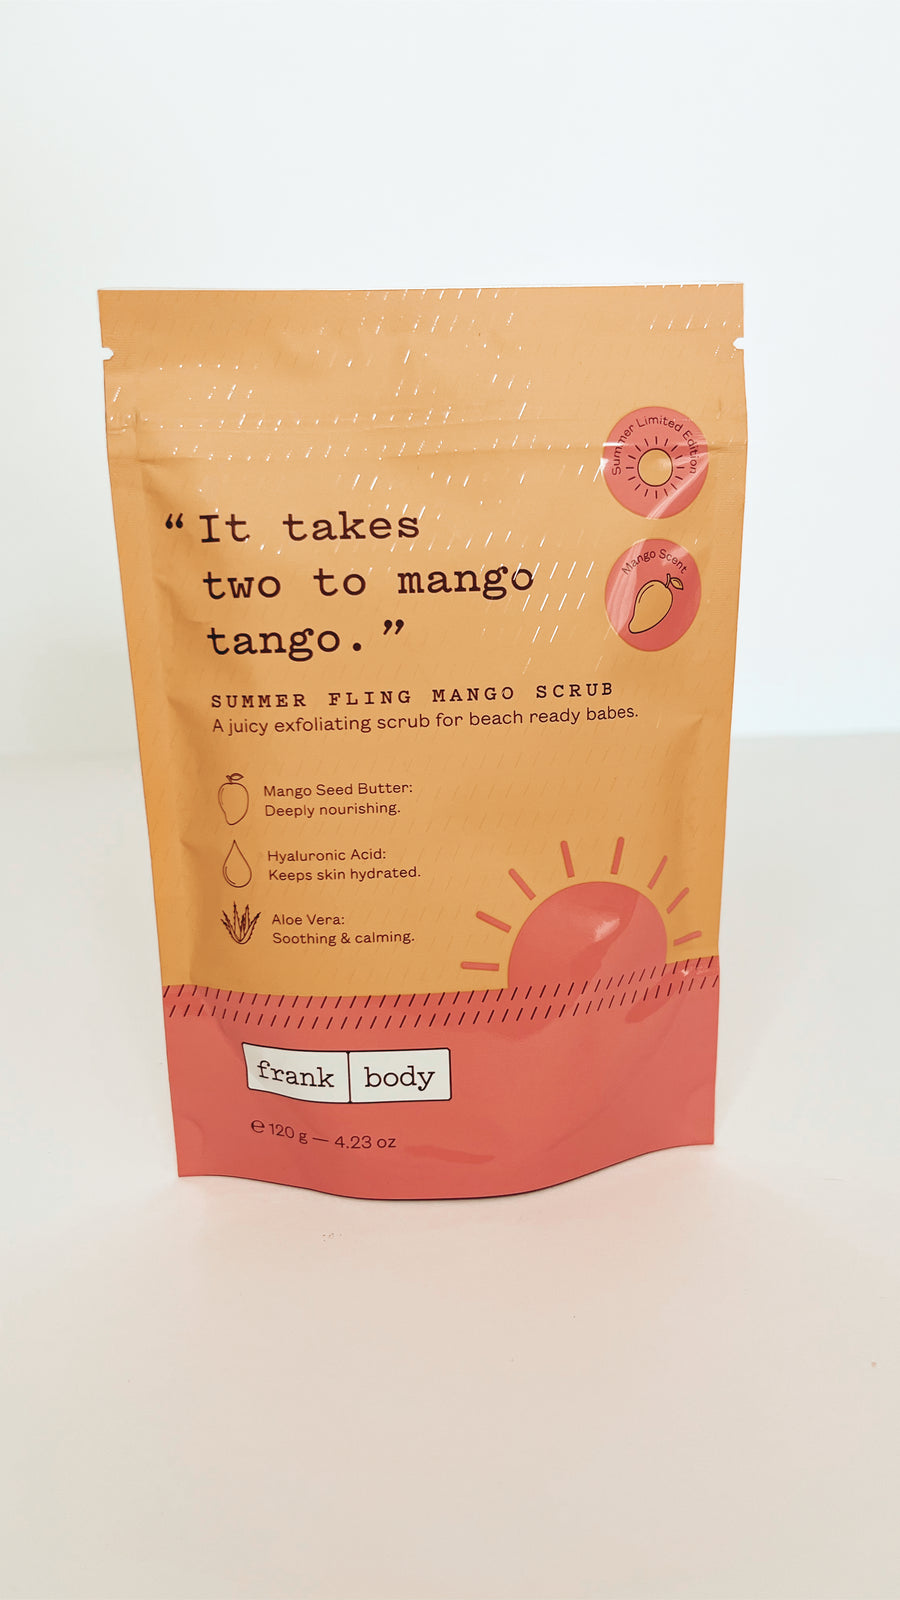 FRANK BODY - It Takes two to mango tango scrub